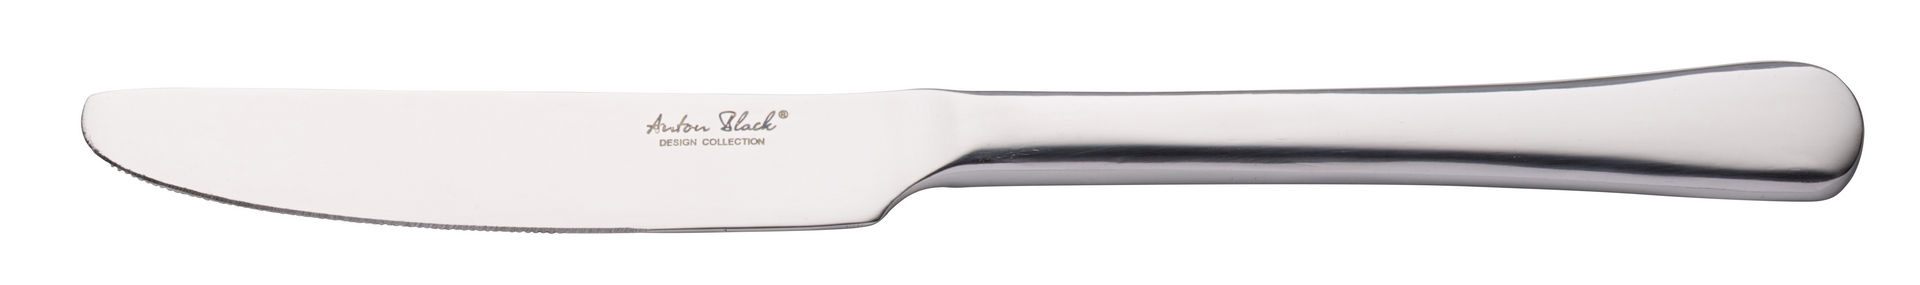 Verdi Table Knife - F10705-000000-B01012 (Pack of 12)